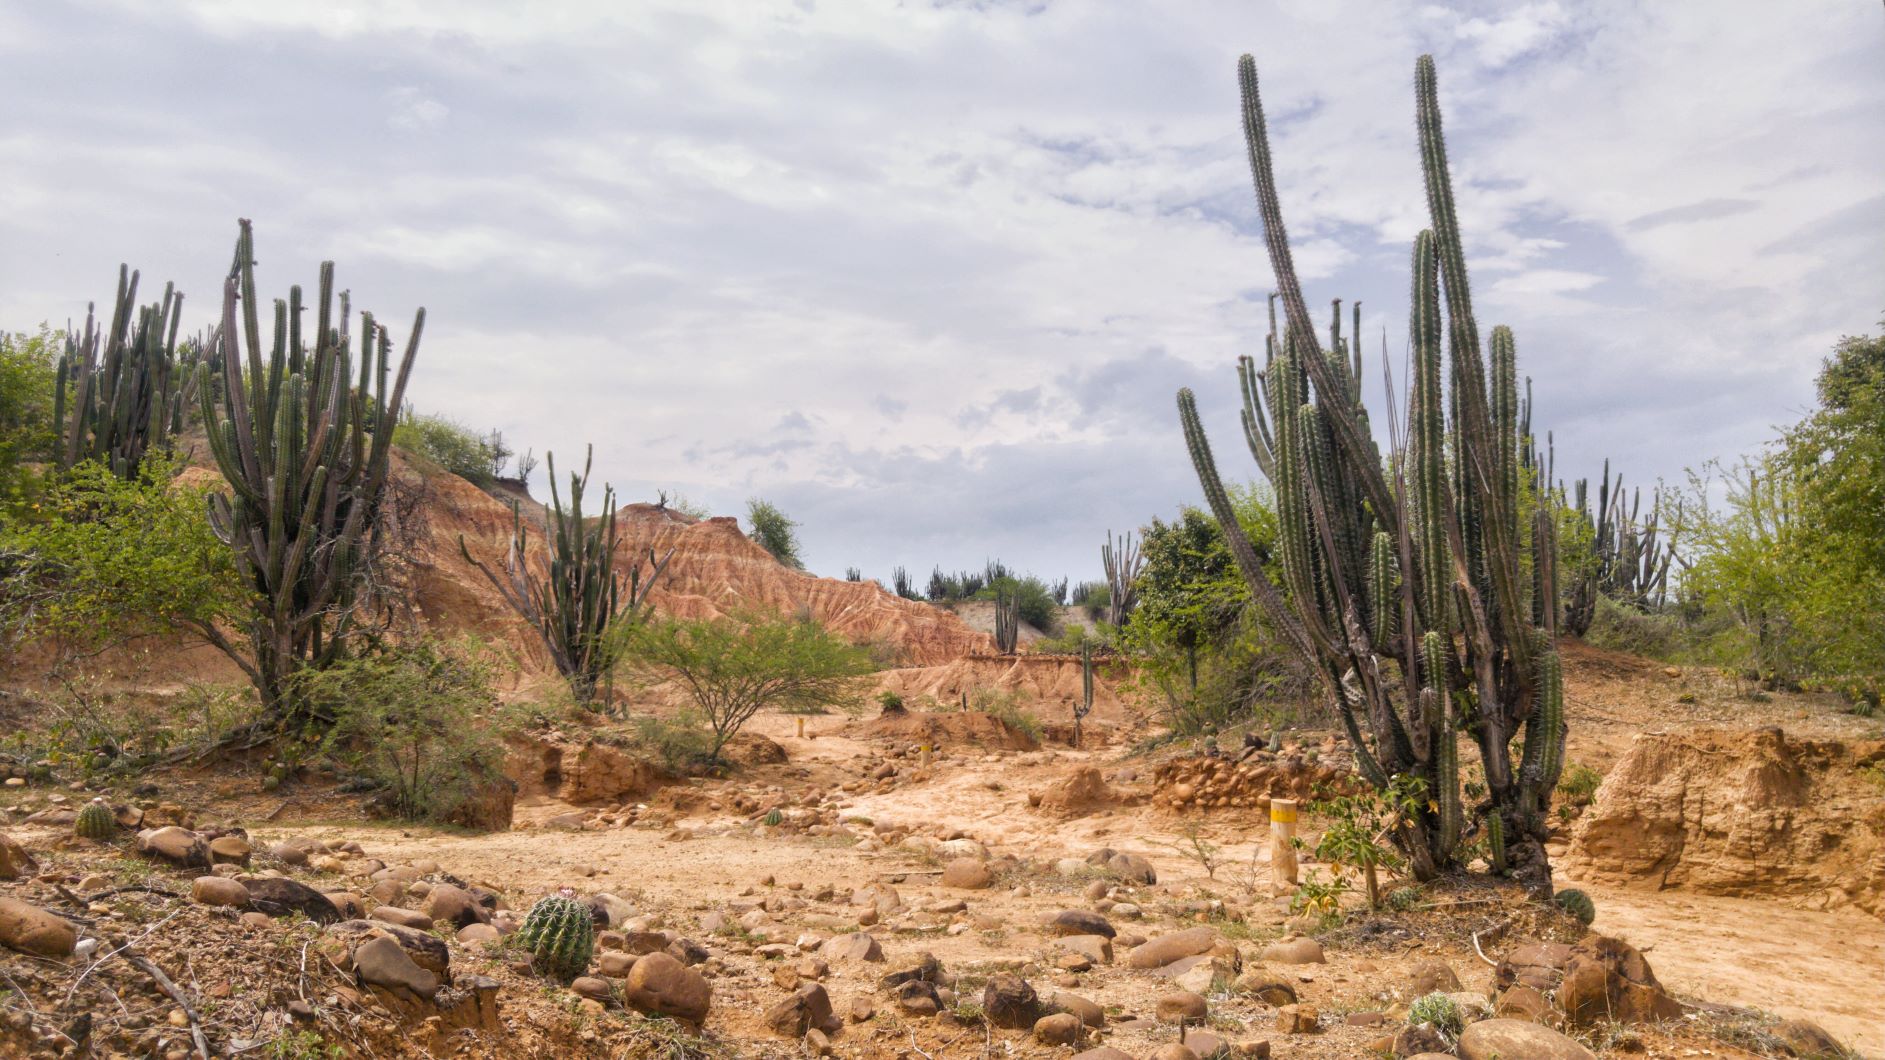 Tatacoa Desert Cactus